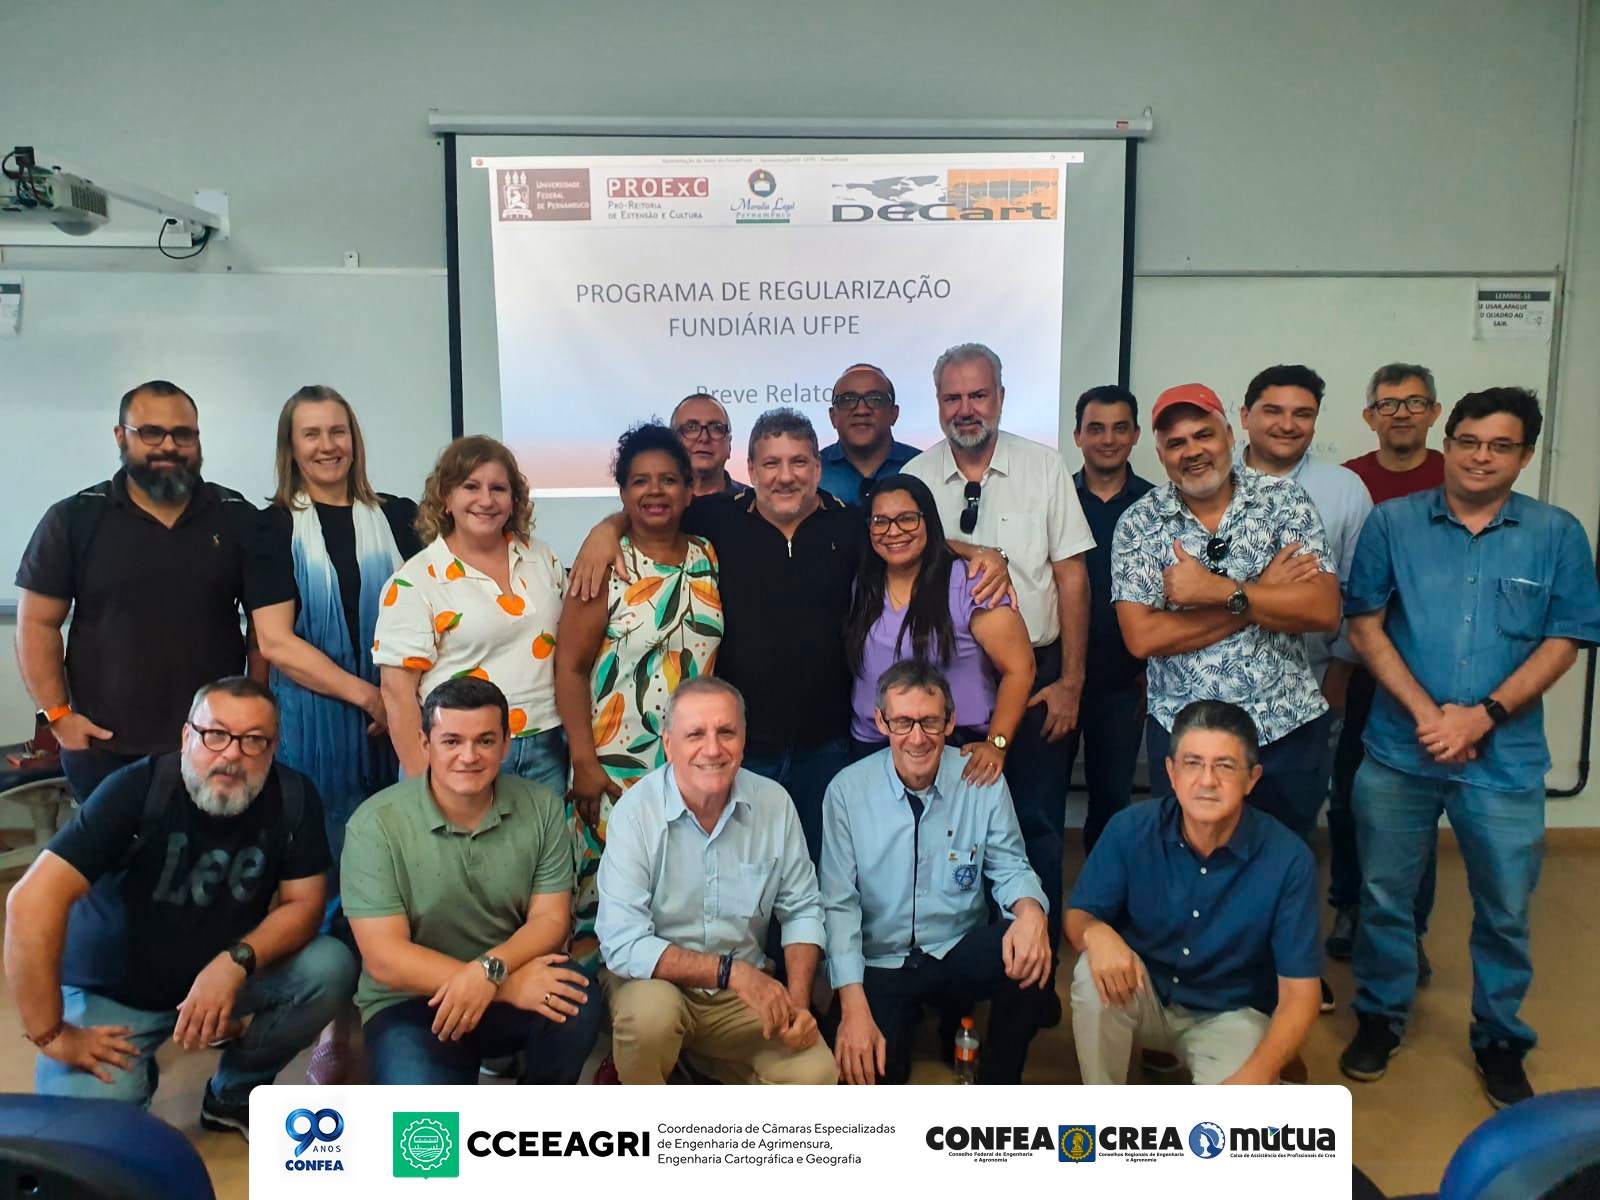 CCEAGRI esteve reunida em Recife para tratar de temas como a regularização fundiária urbana, o uso de drones no mapeamento, ODS e ainda o monitoramento de barragens